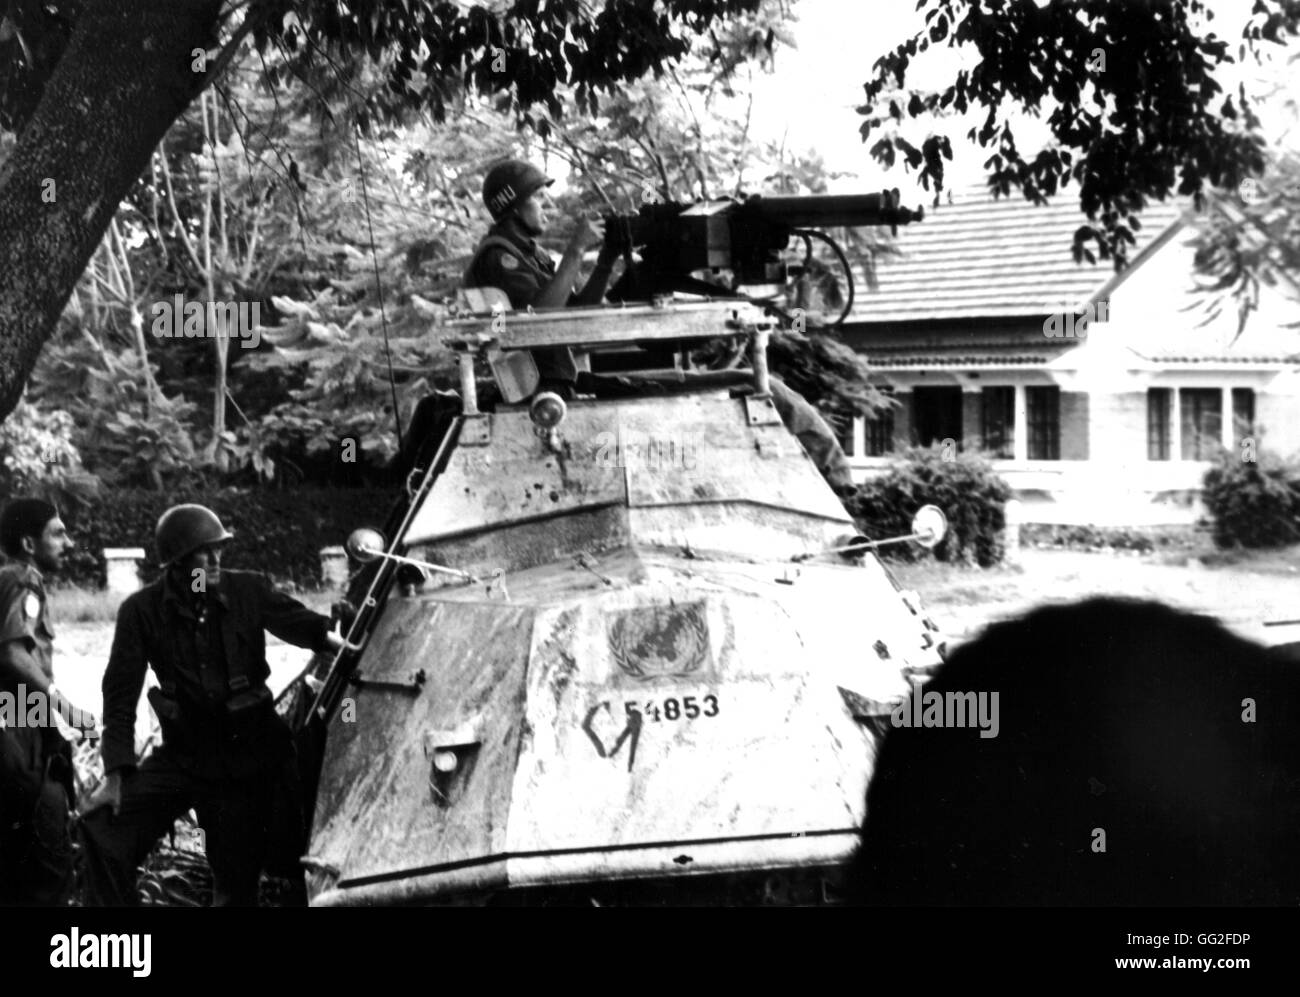 Katanga. U.N.O. forces en action à Elisabethville. L'équipage d'un véhicule blindé endommagé réplique avec des mitraillettes. Décembre 1961 Congo (Zaïre) Banque D'Images